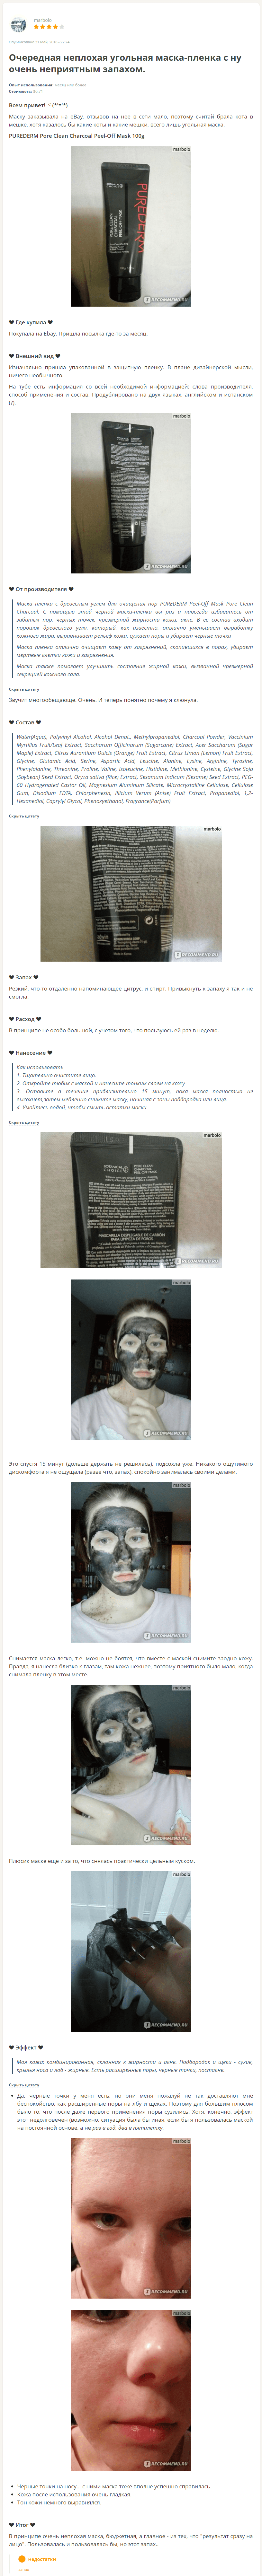 purederm peel off mask charcoal отзыв-min